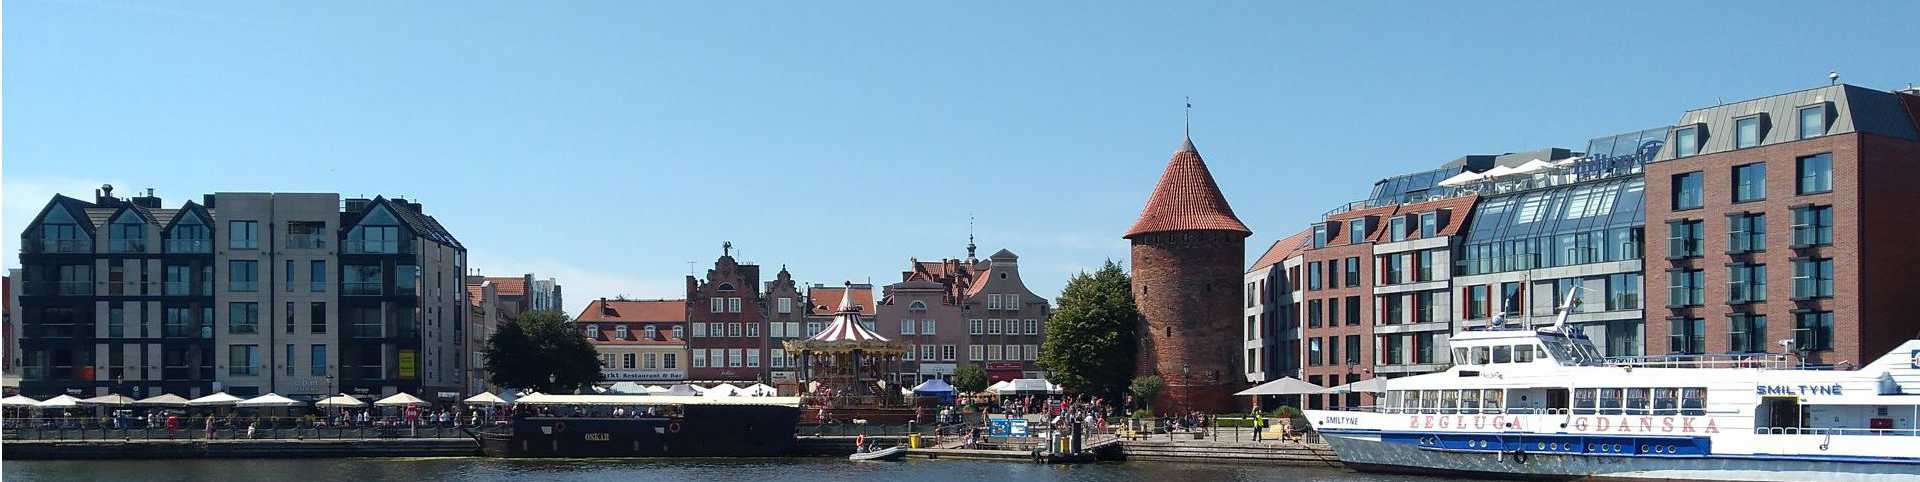 panorama Gdańska od strony Motławy